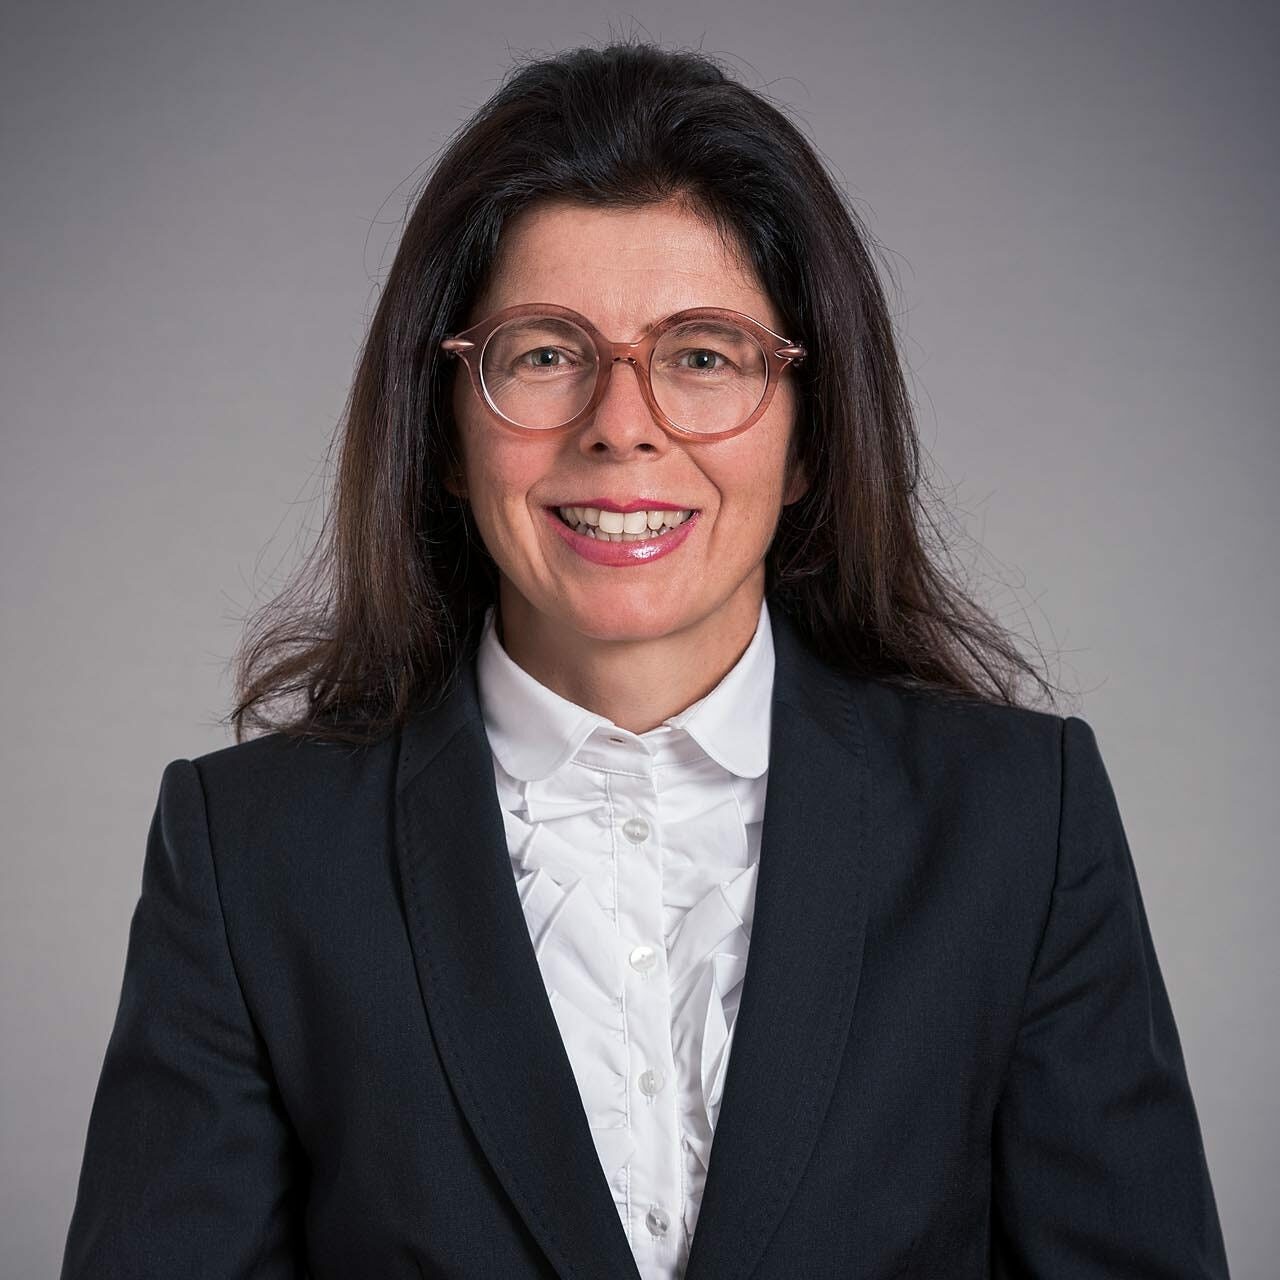 Rechtsanwältin Lisbeth Bechtel - rechtsanwalt.com